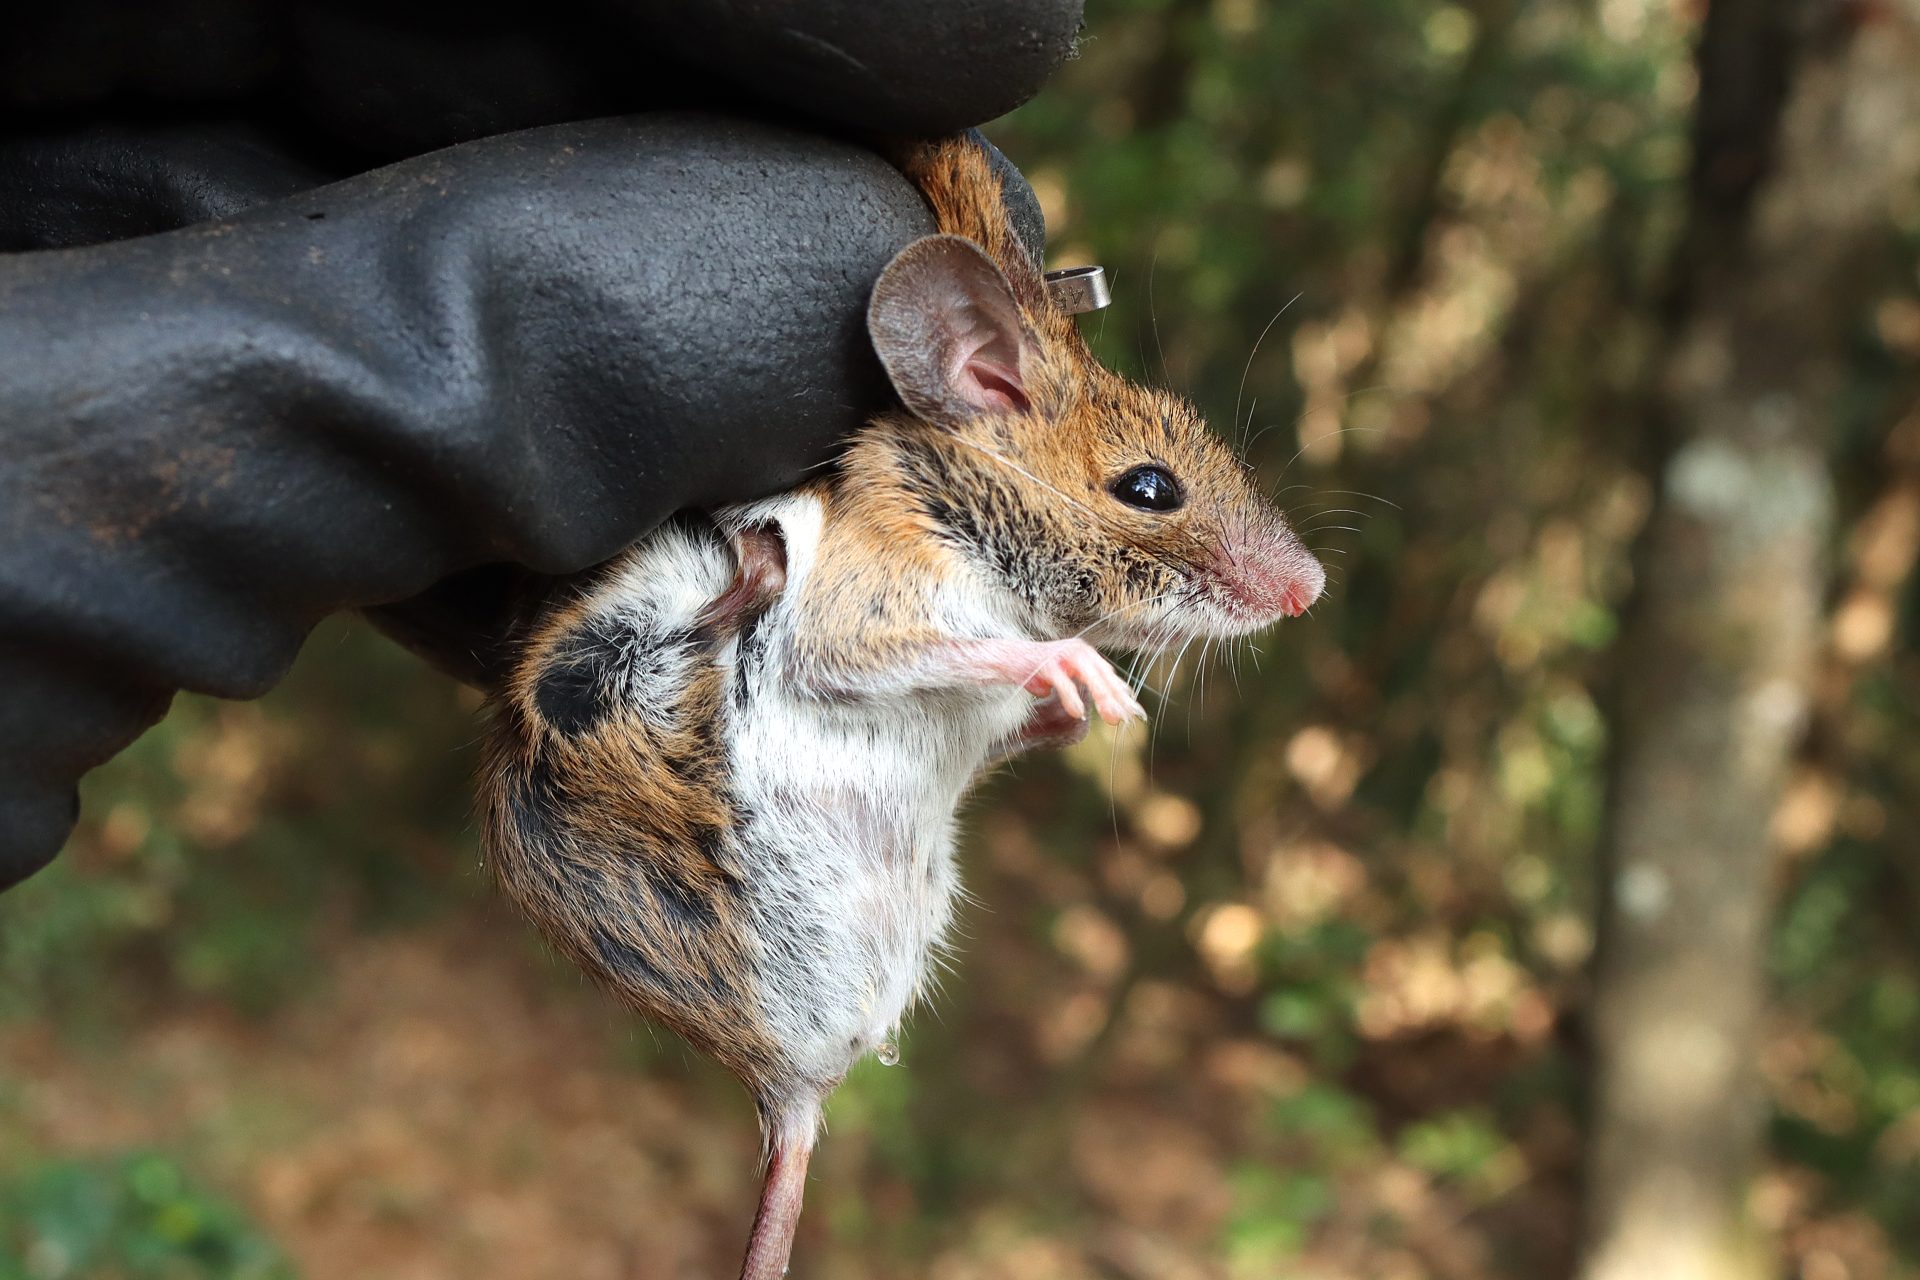 Un ratolí de bosc agafat per la mà d'un expert. Es veuen tots els detalls de les orelles, ulls i potes de davant.